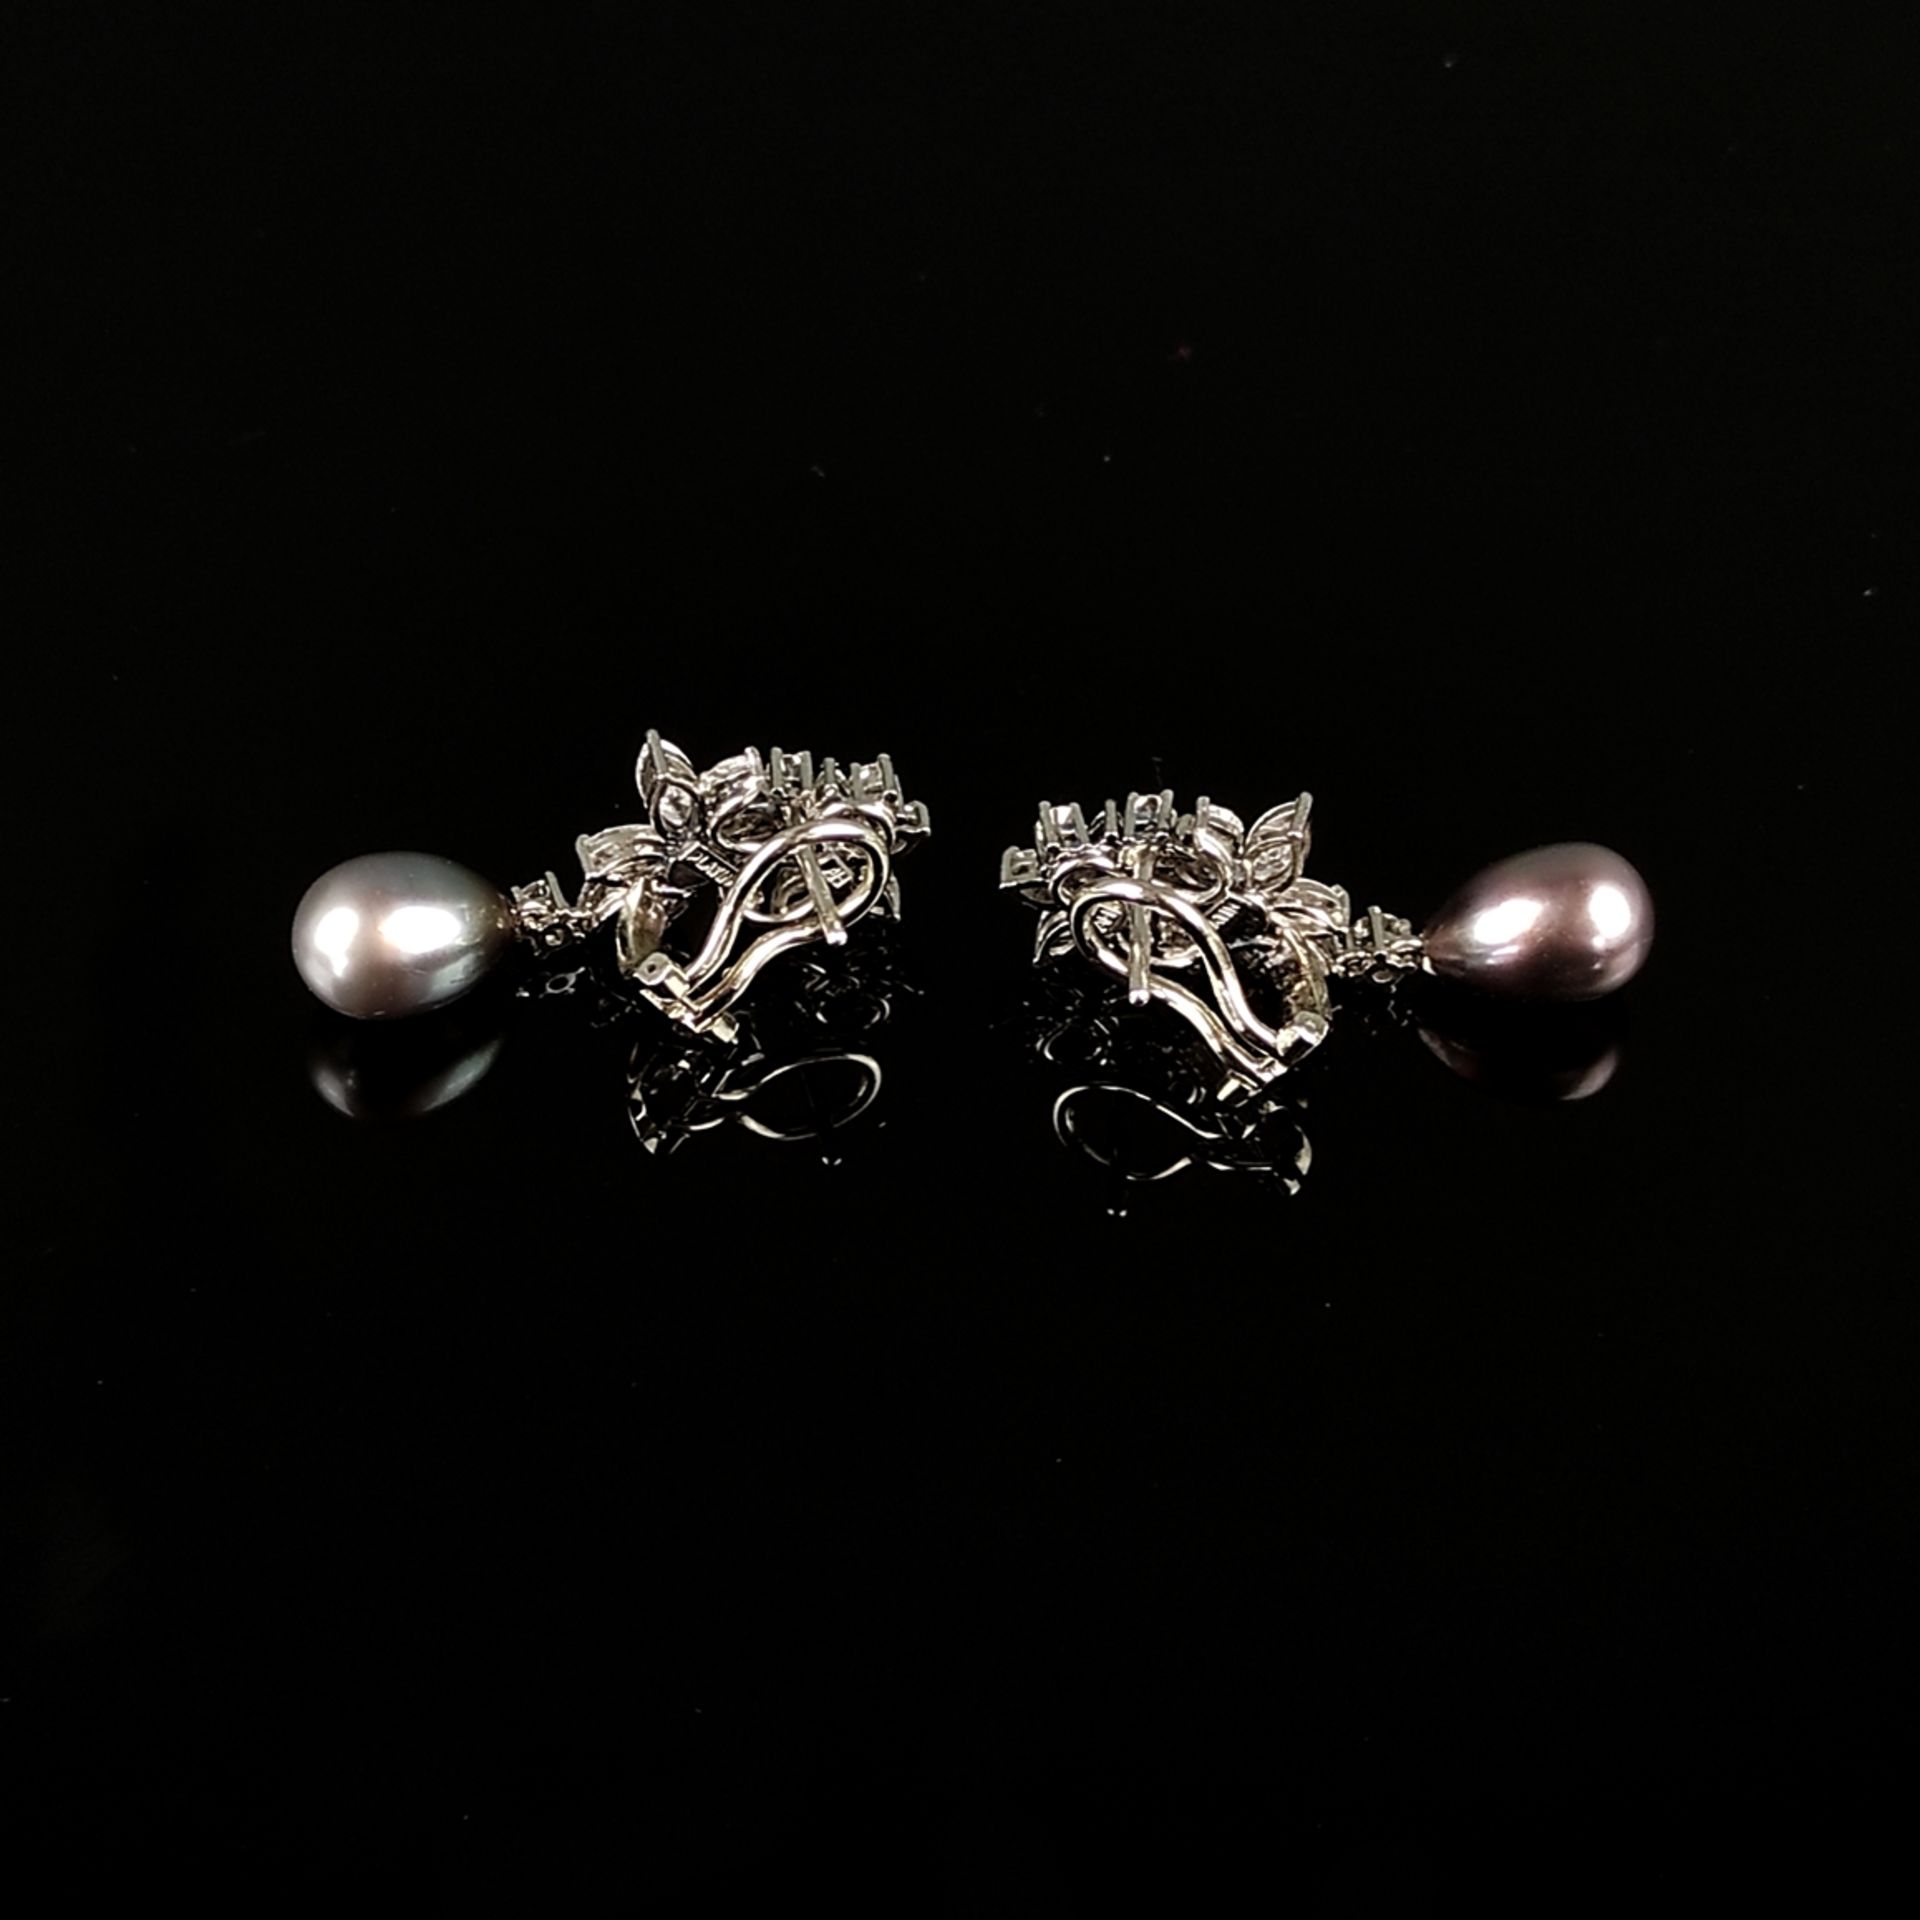 Paar exklusive Diamant-Perl-Ohrstecker, 950 Platin (punziert), Gesamtgewicht 10,24g, oberer Teil au - Bild 2 aus 3